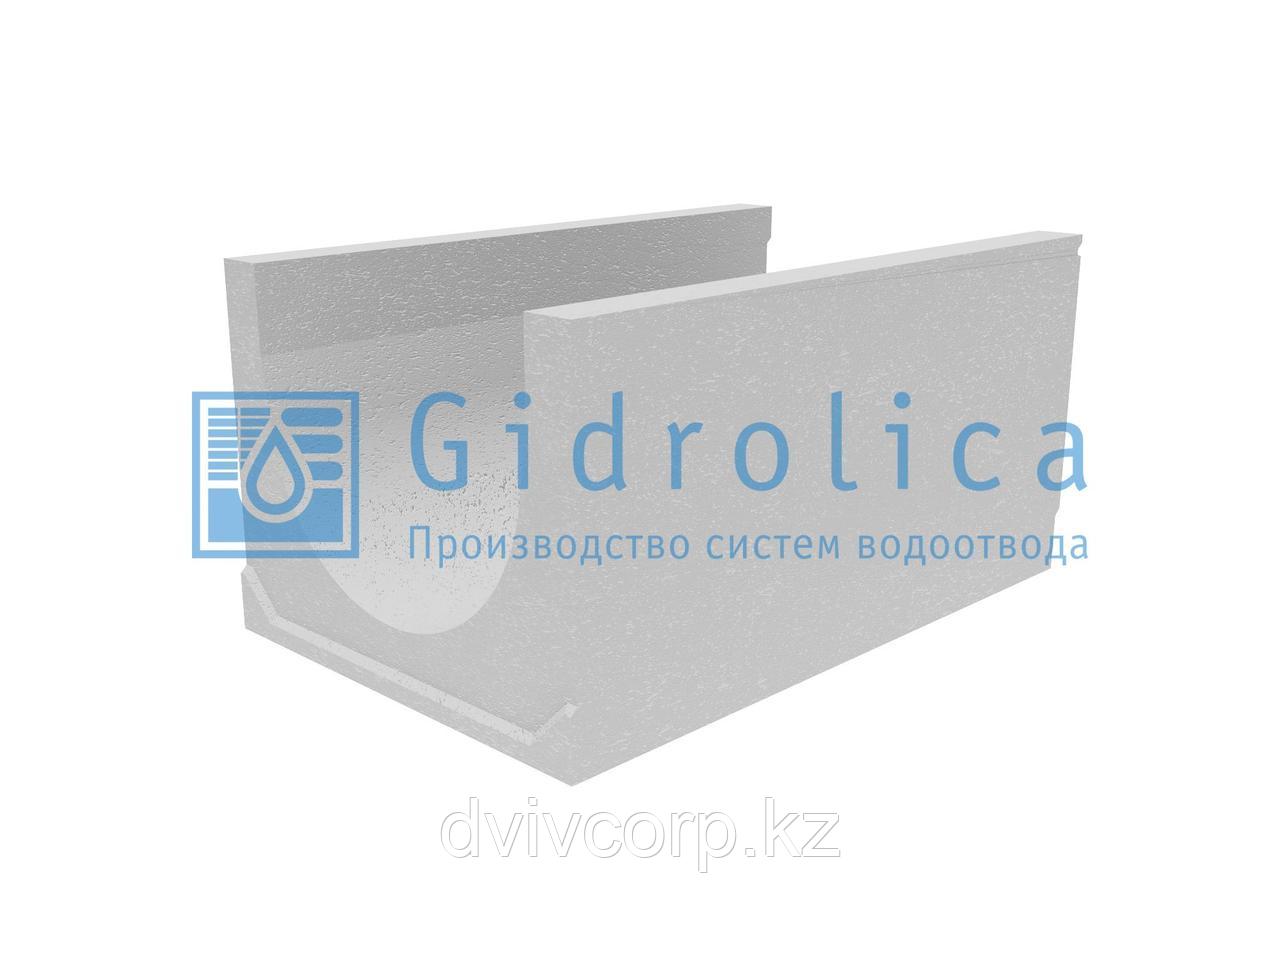 Лоток водоотводный бетонный коробчатый (СО-500мм), с уклоном 0,5%  КUу 100.65(50).51(42) - BGU-XL, № 12